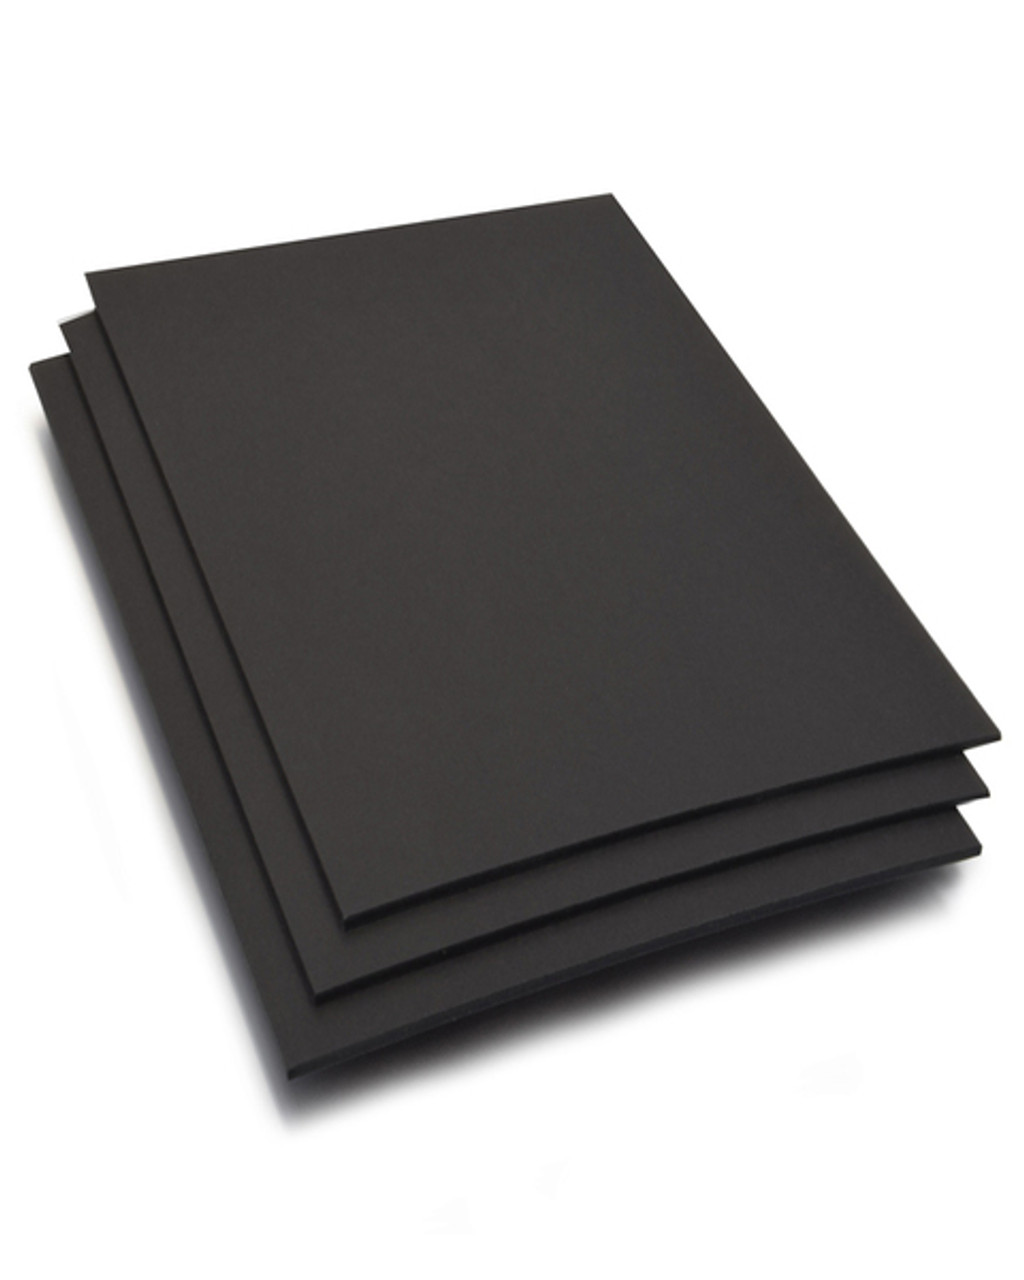 Pack of 25 3/16 Thick Foam Core Board 11x14 Black Foam Backing Boards